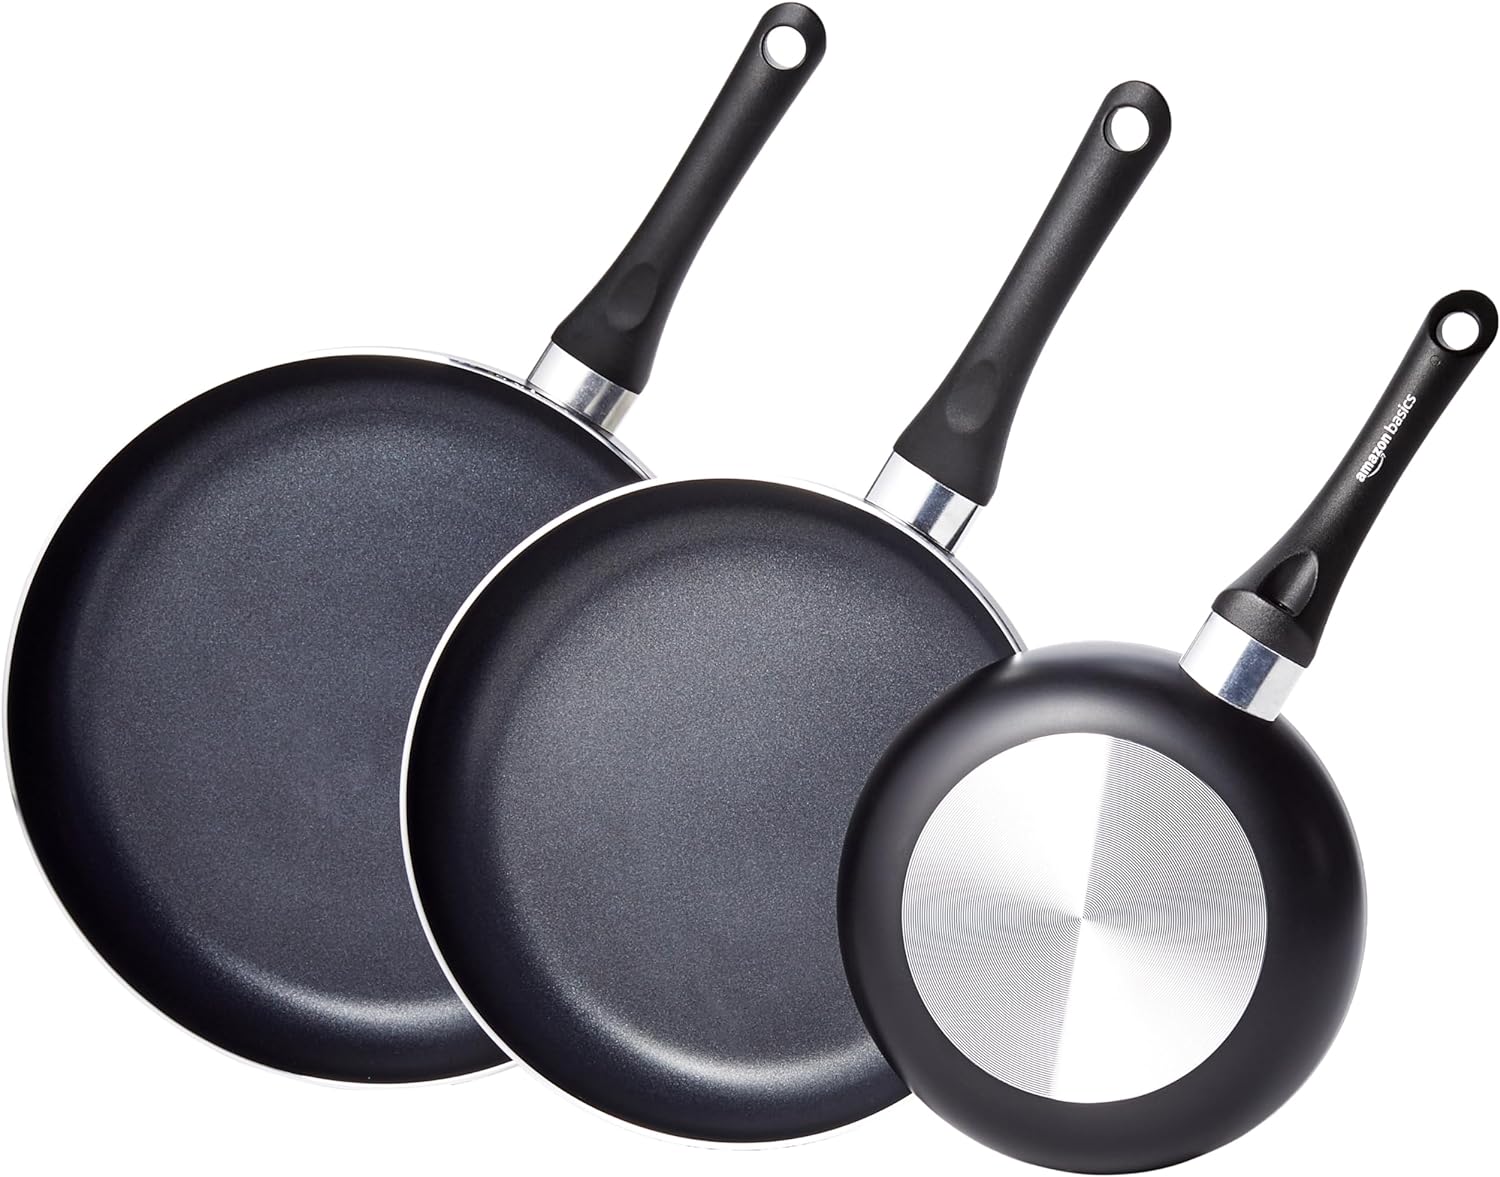 Amazon Basics Non-Stick Cookware 8-Piece Set, Pots and Pans, Black